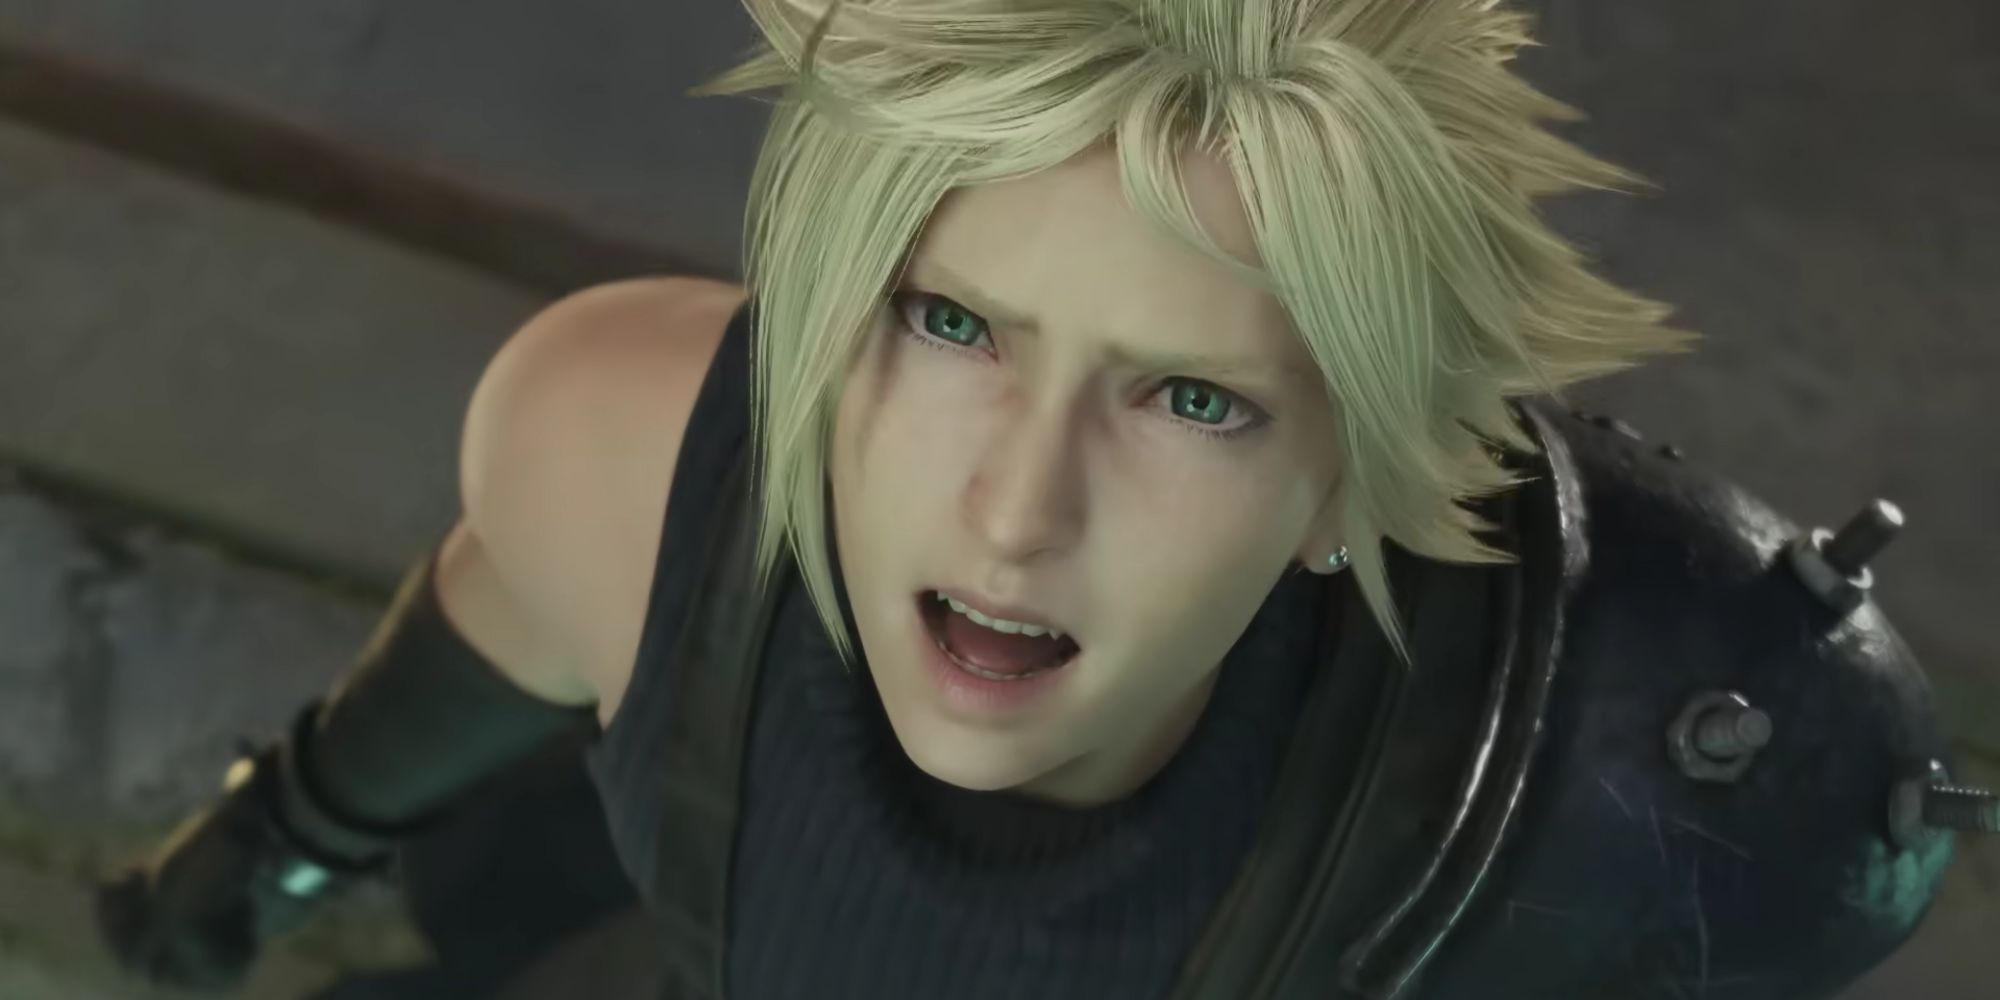 Cloud screaming Tifa's name in Final Fantasy 7 Rebirth.